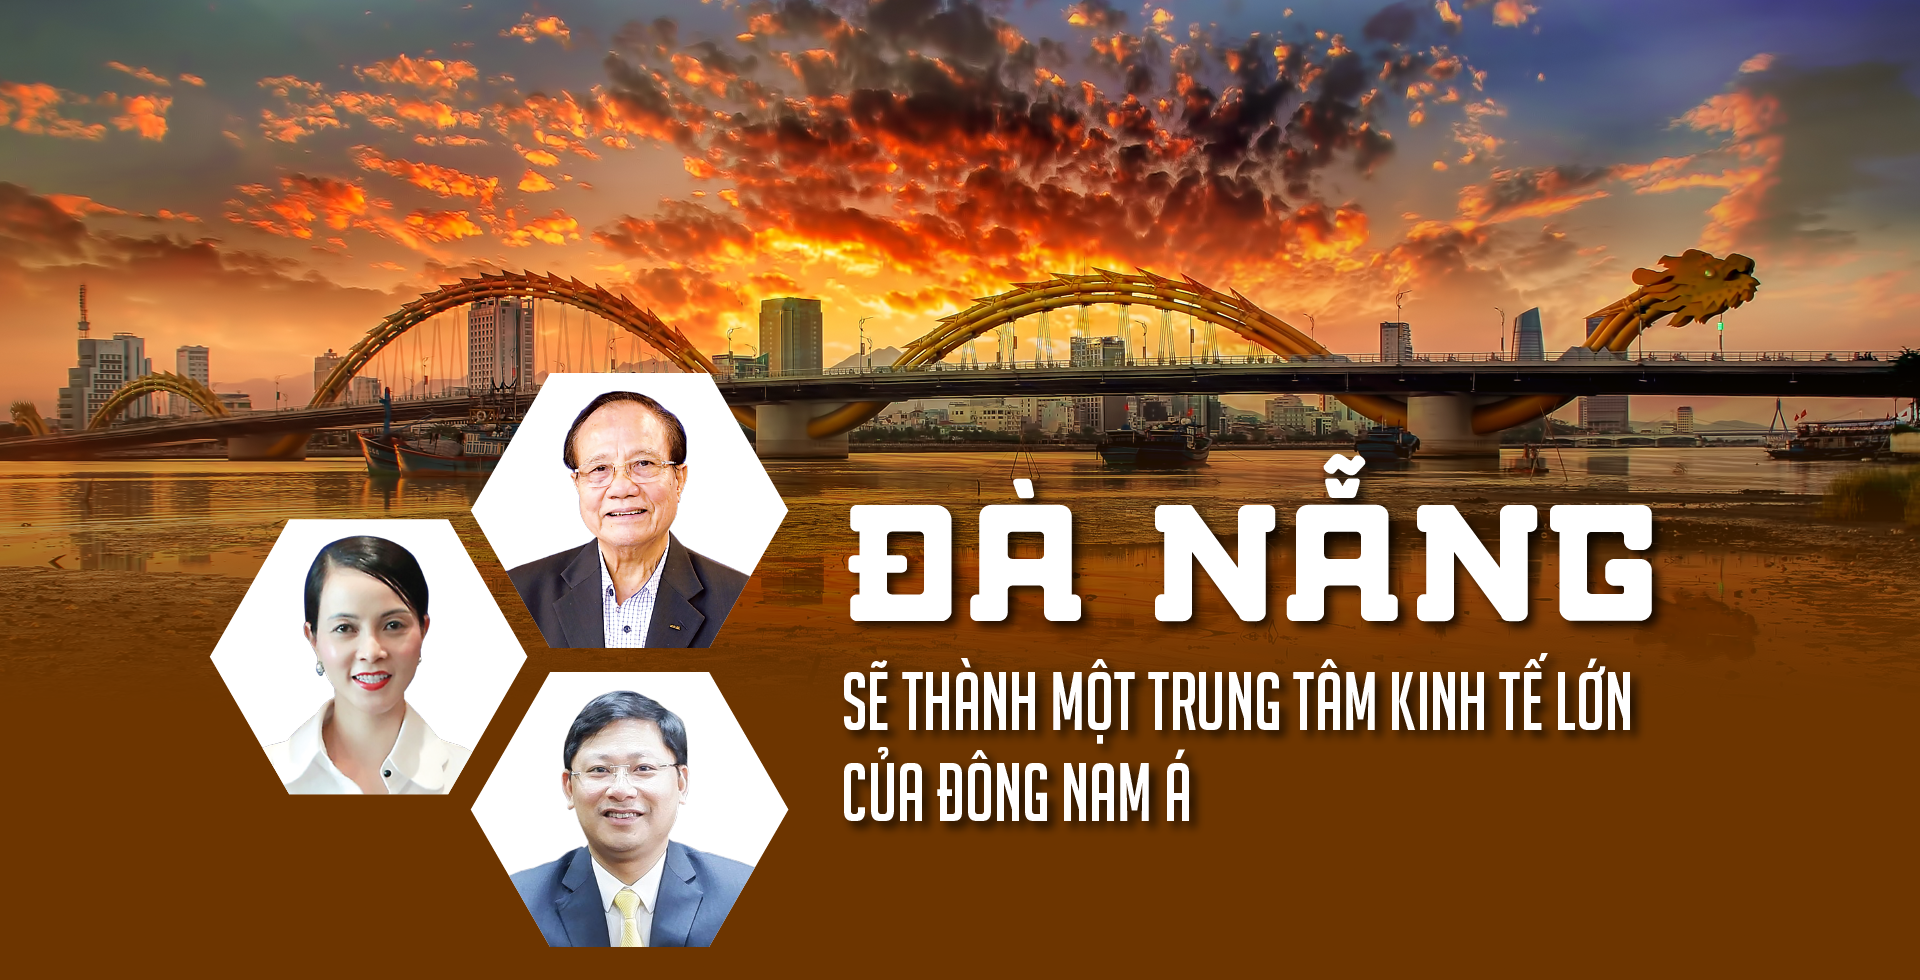 Đà Nẵng sẽ thành một trung tâm kinh tế lớn của Đông Nam Á ...